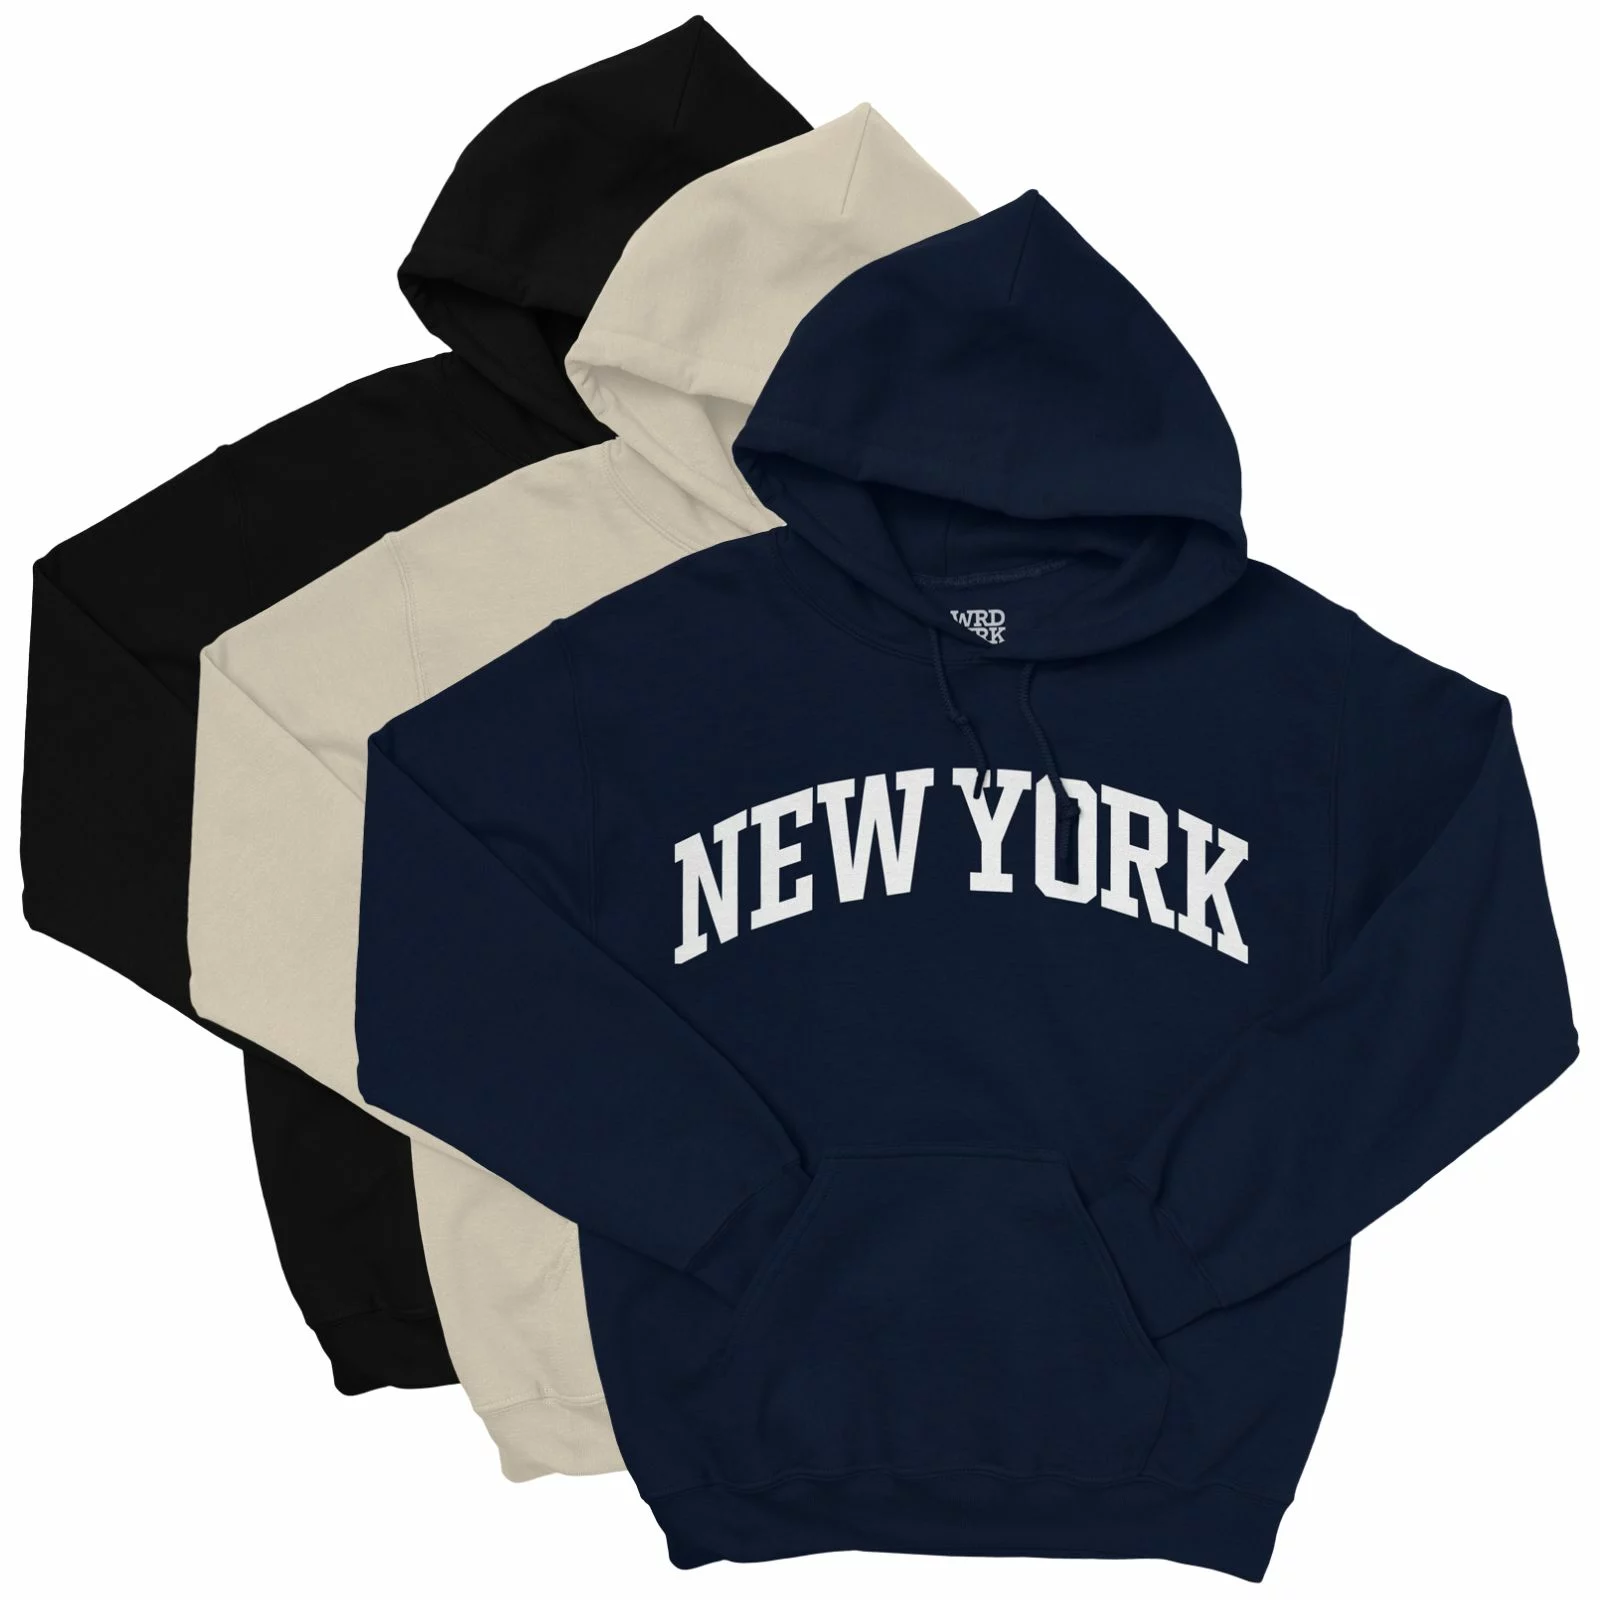 NEW YORK Hooded Sweatshirt - WRDMRK